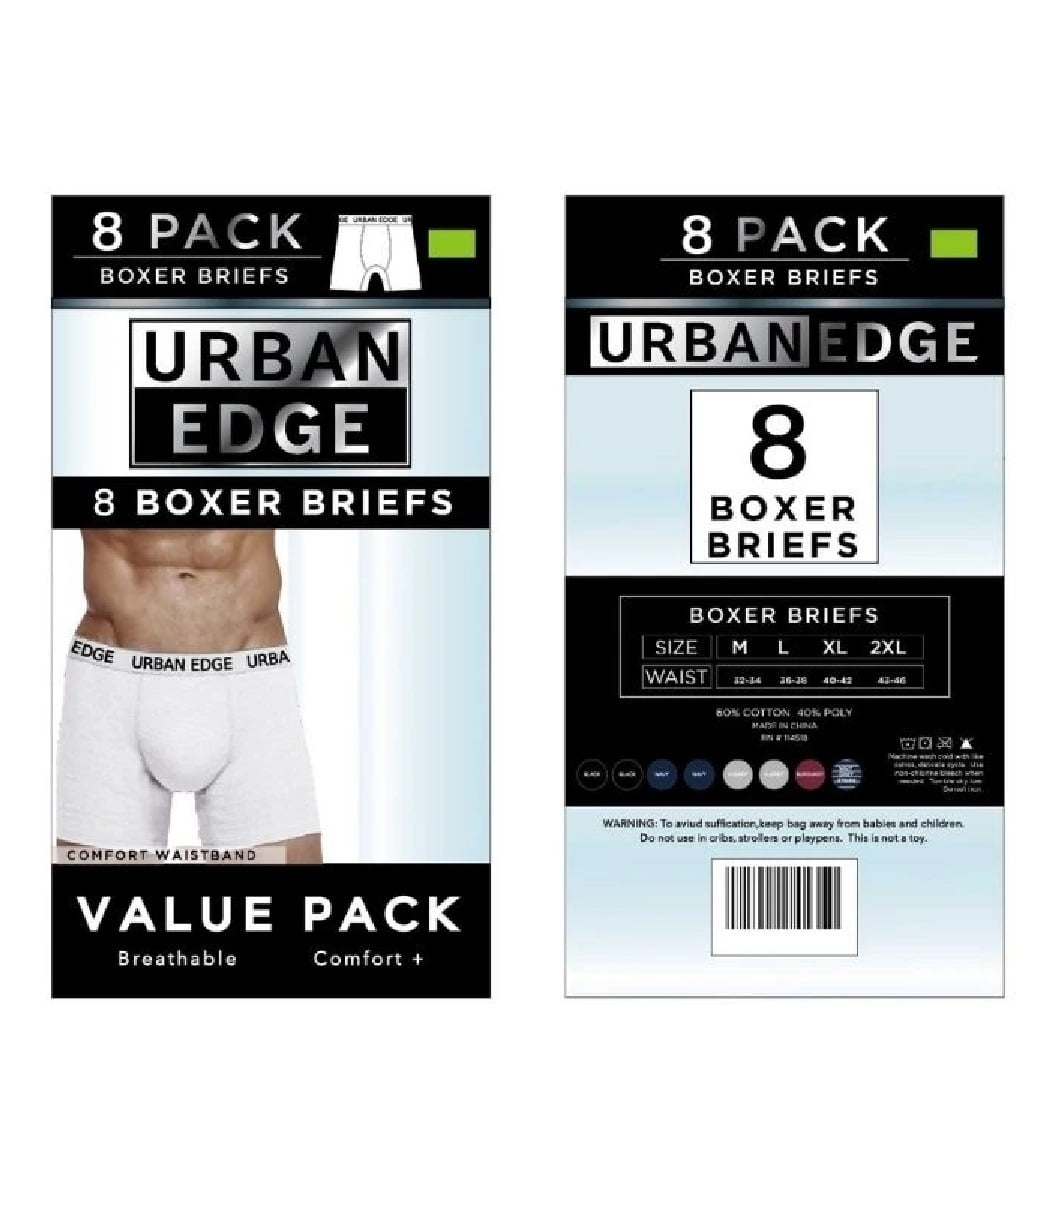 EGDE underwear - EGDE underwear added a new photo.